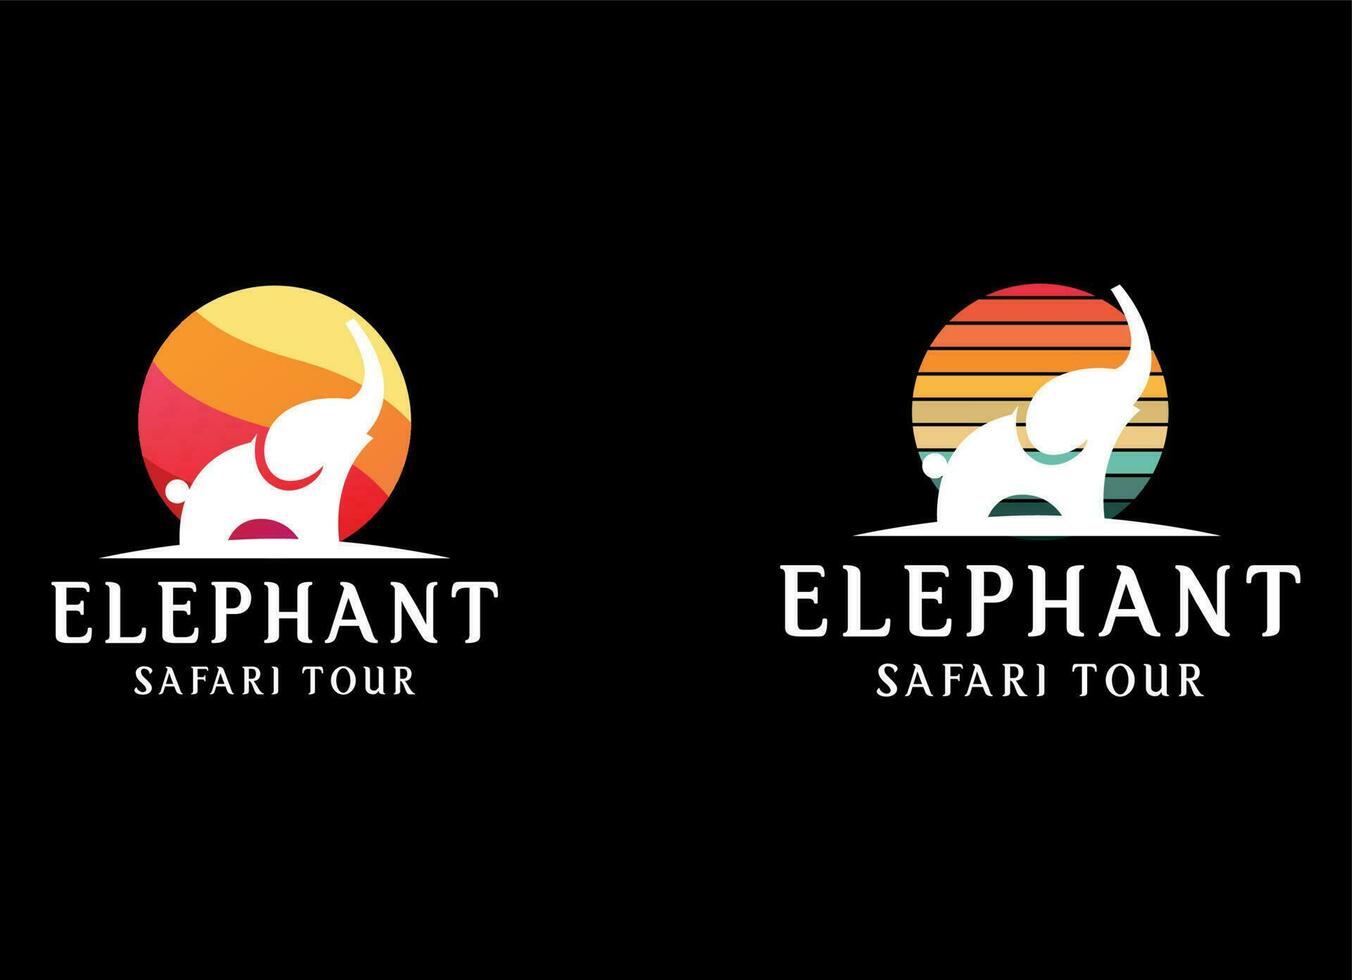 elefant logotyp design. modern elefant logotyp vektor